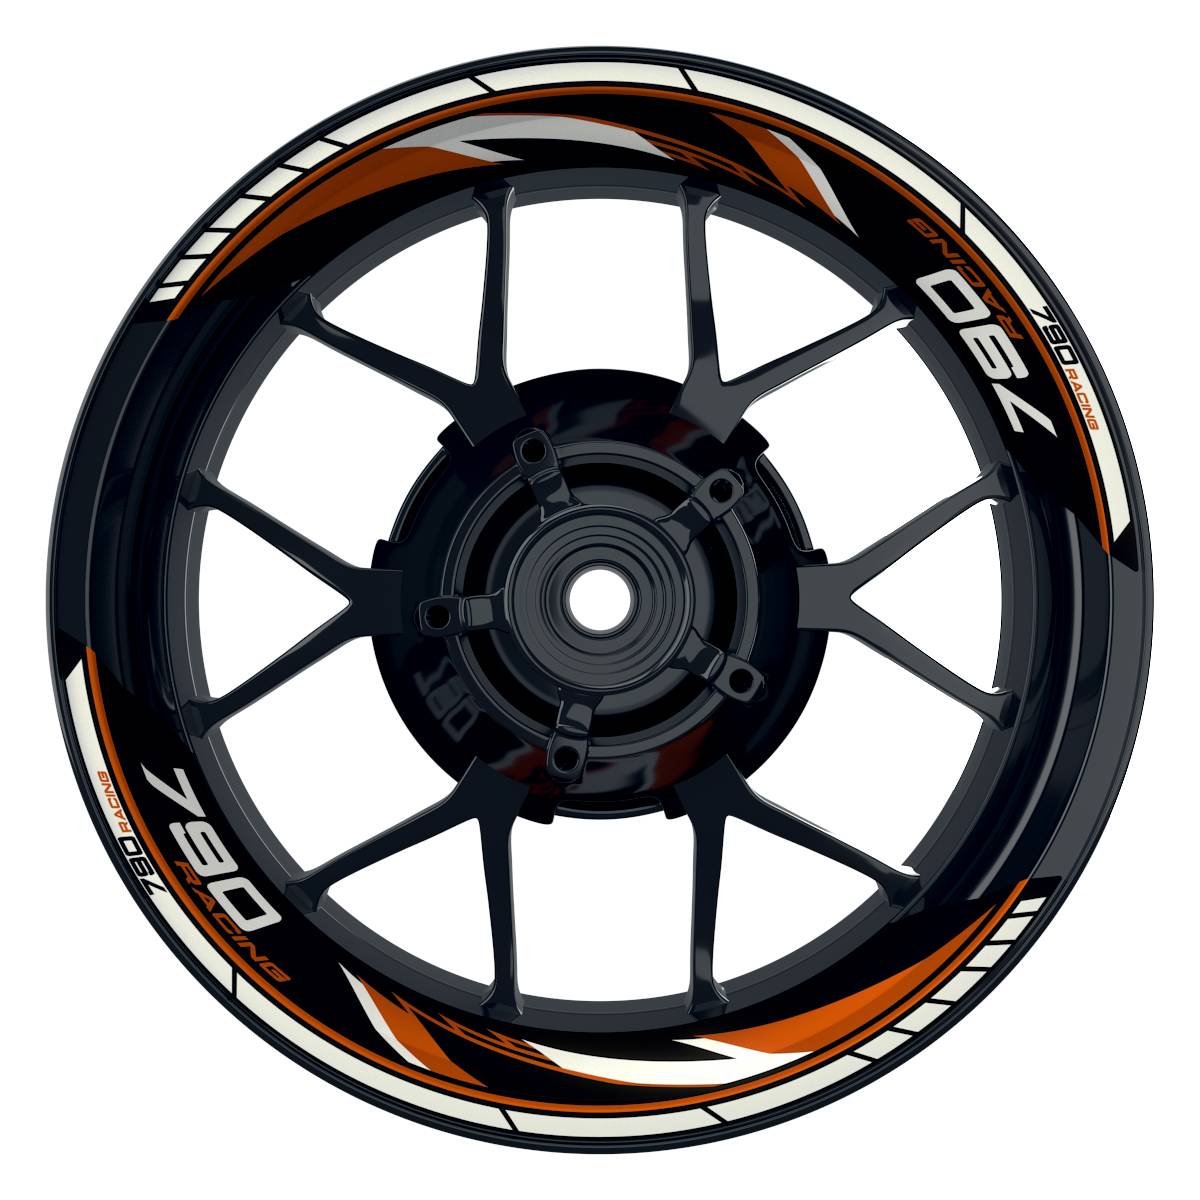 KTM Racing 790 Razor schwarz orange Frontansicht